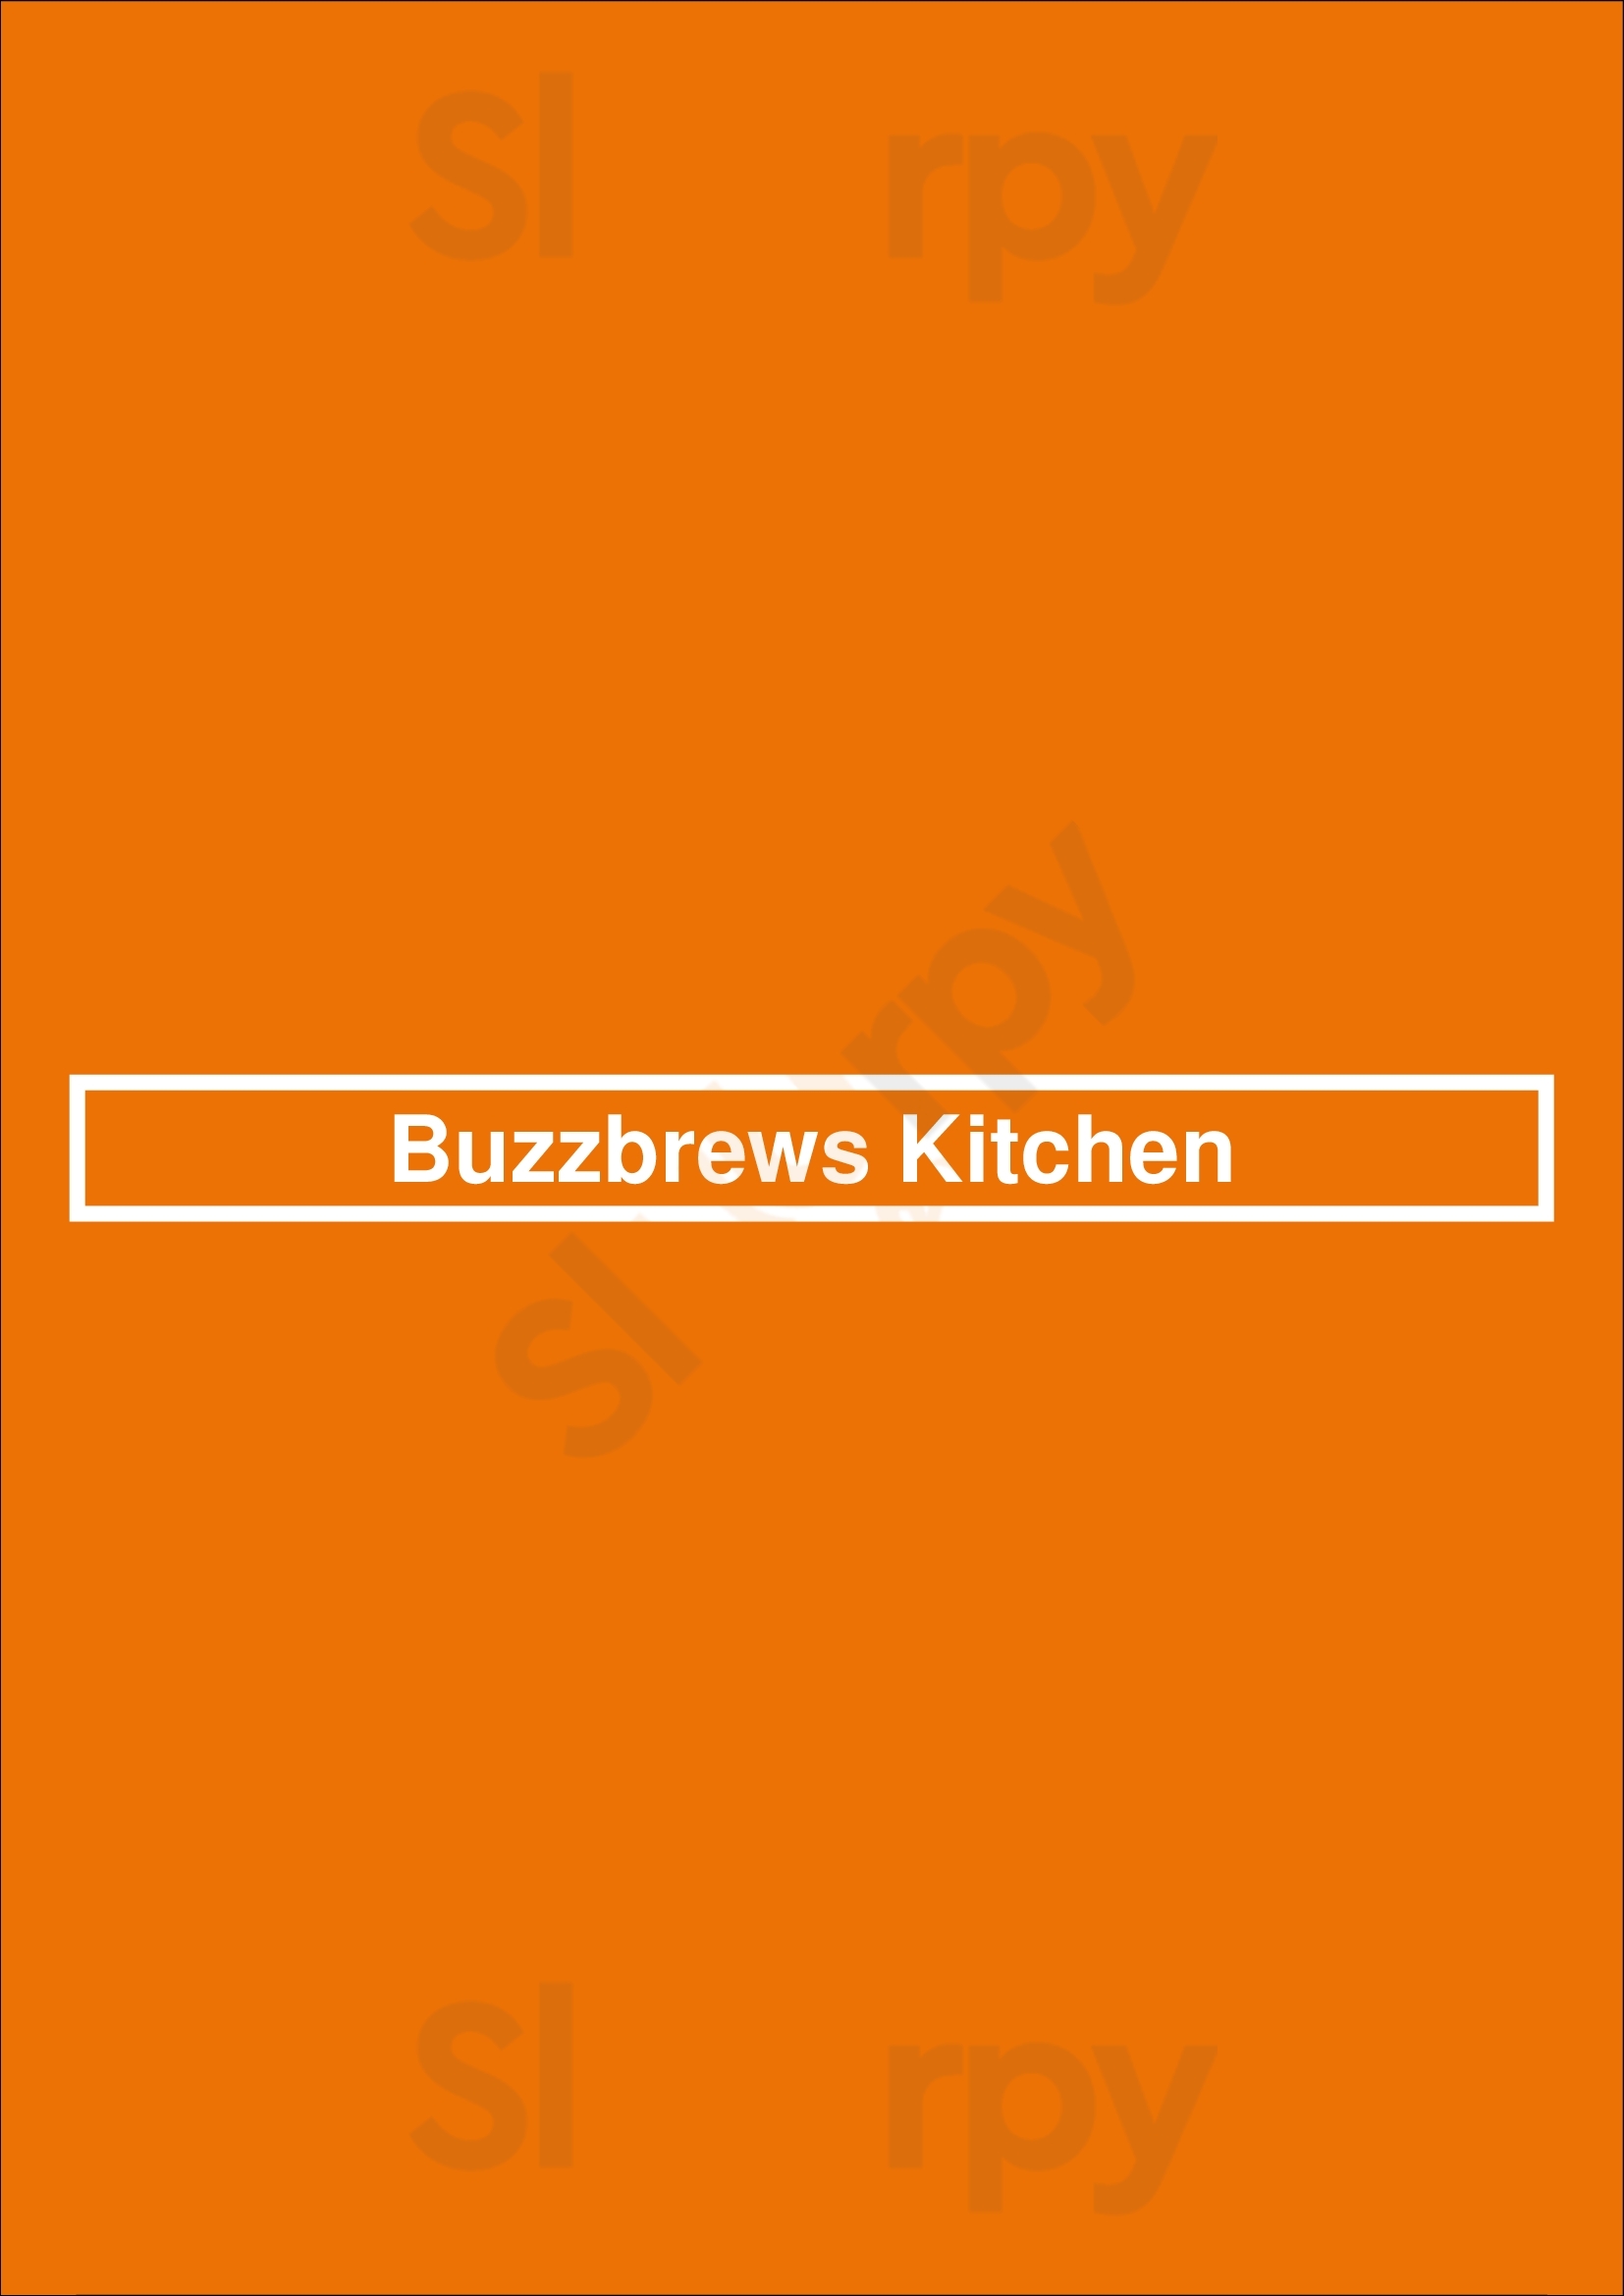 Buzzbrews Kitchen Dallas Menu - 1